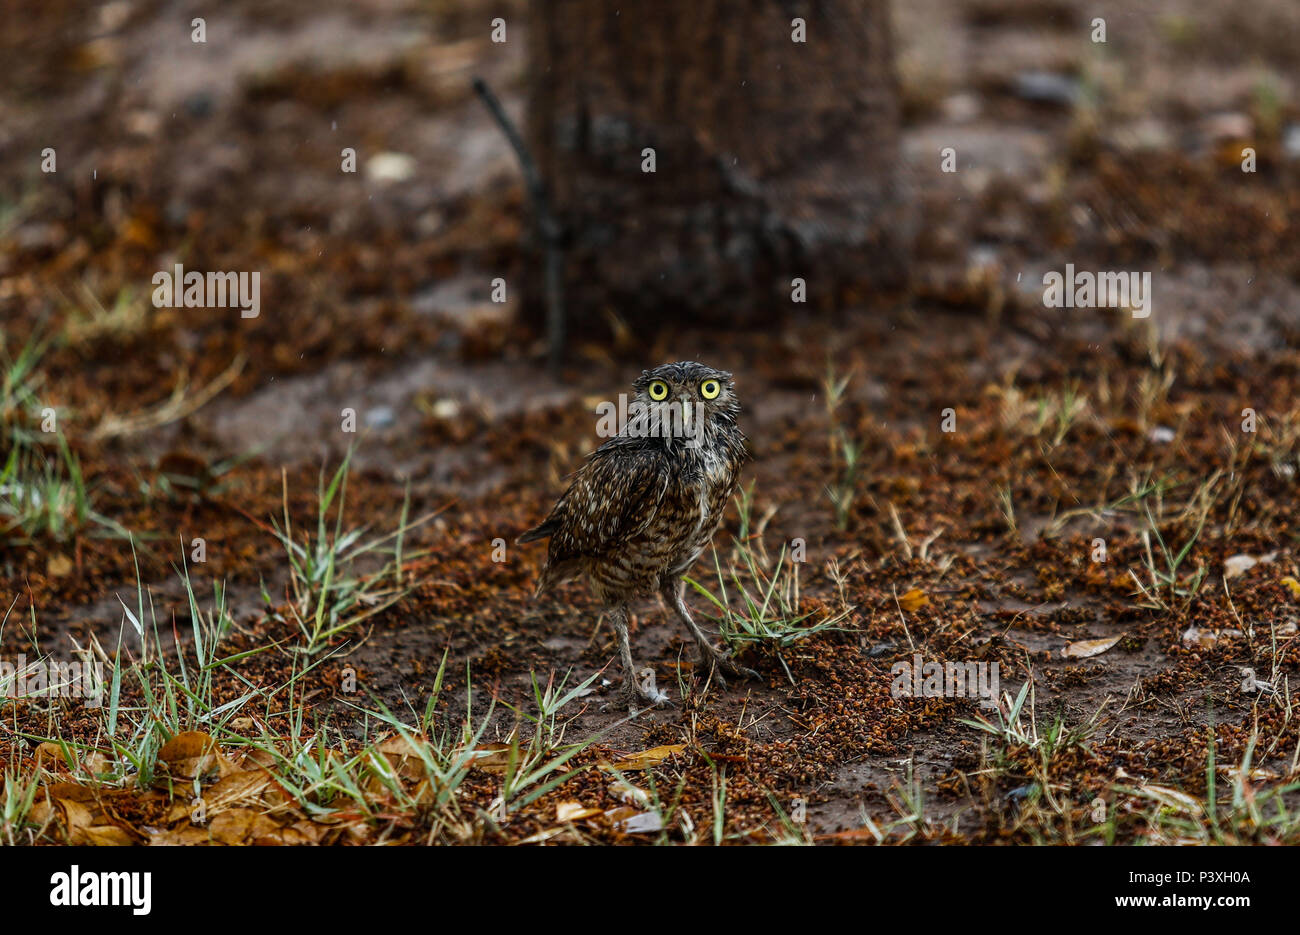 Tecolote llanero. Athene cunicularia. Lechuza pequeña y de patas largas que se encuentra en todos los paisajes abiertos de América Latina. El Tecolote Stock Photo